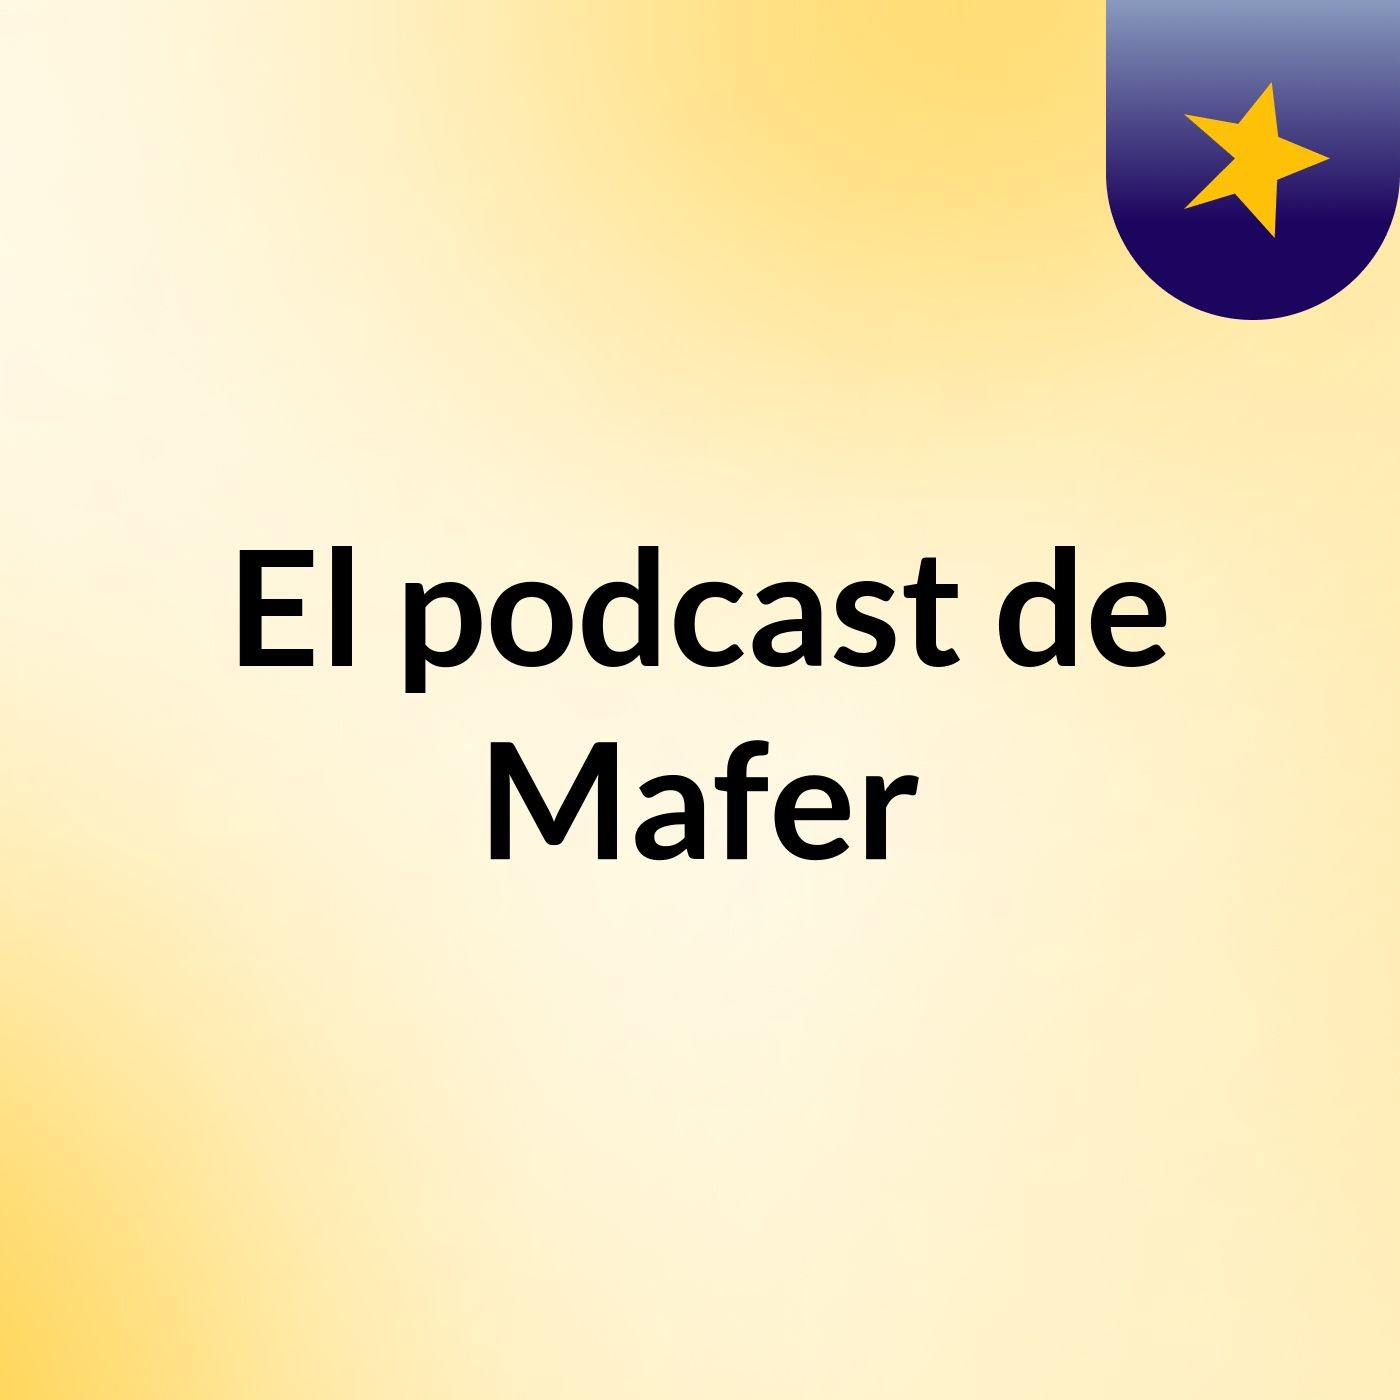 Episodio 11 - El podcast de Mafer